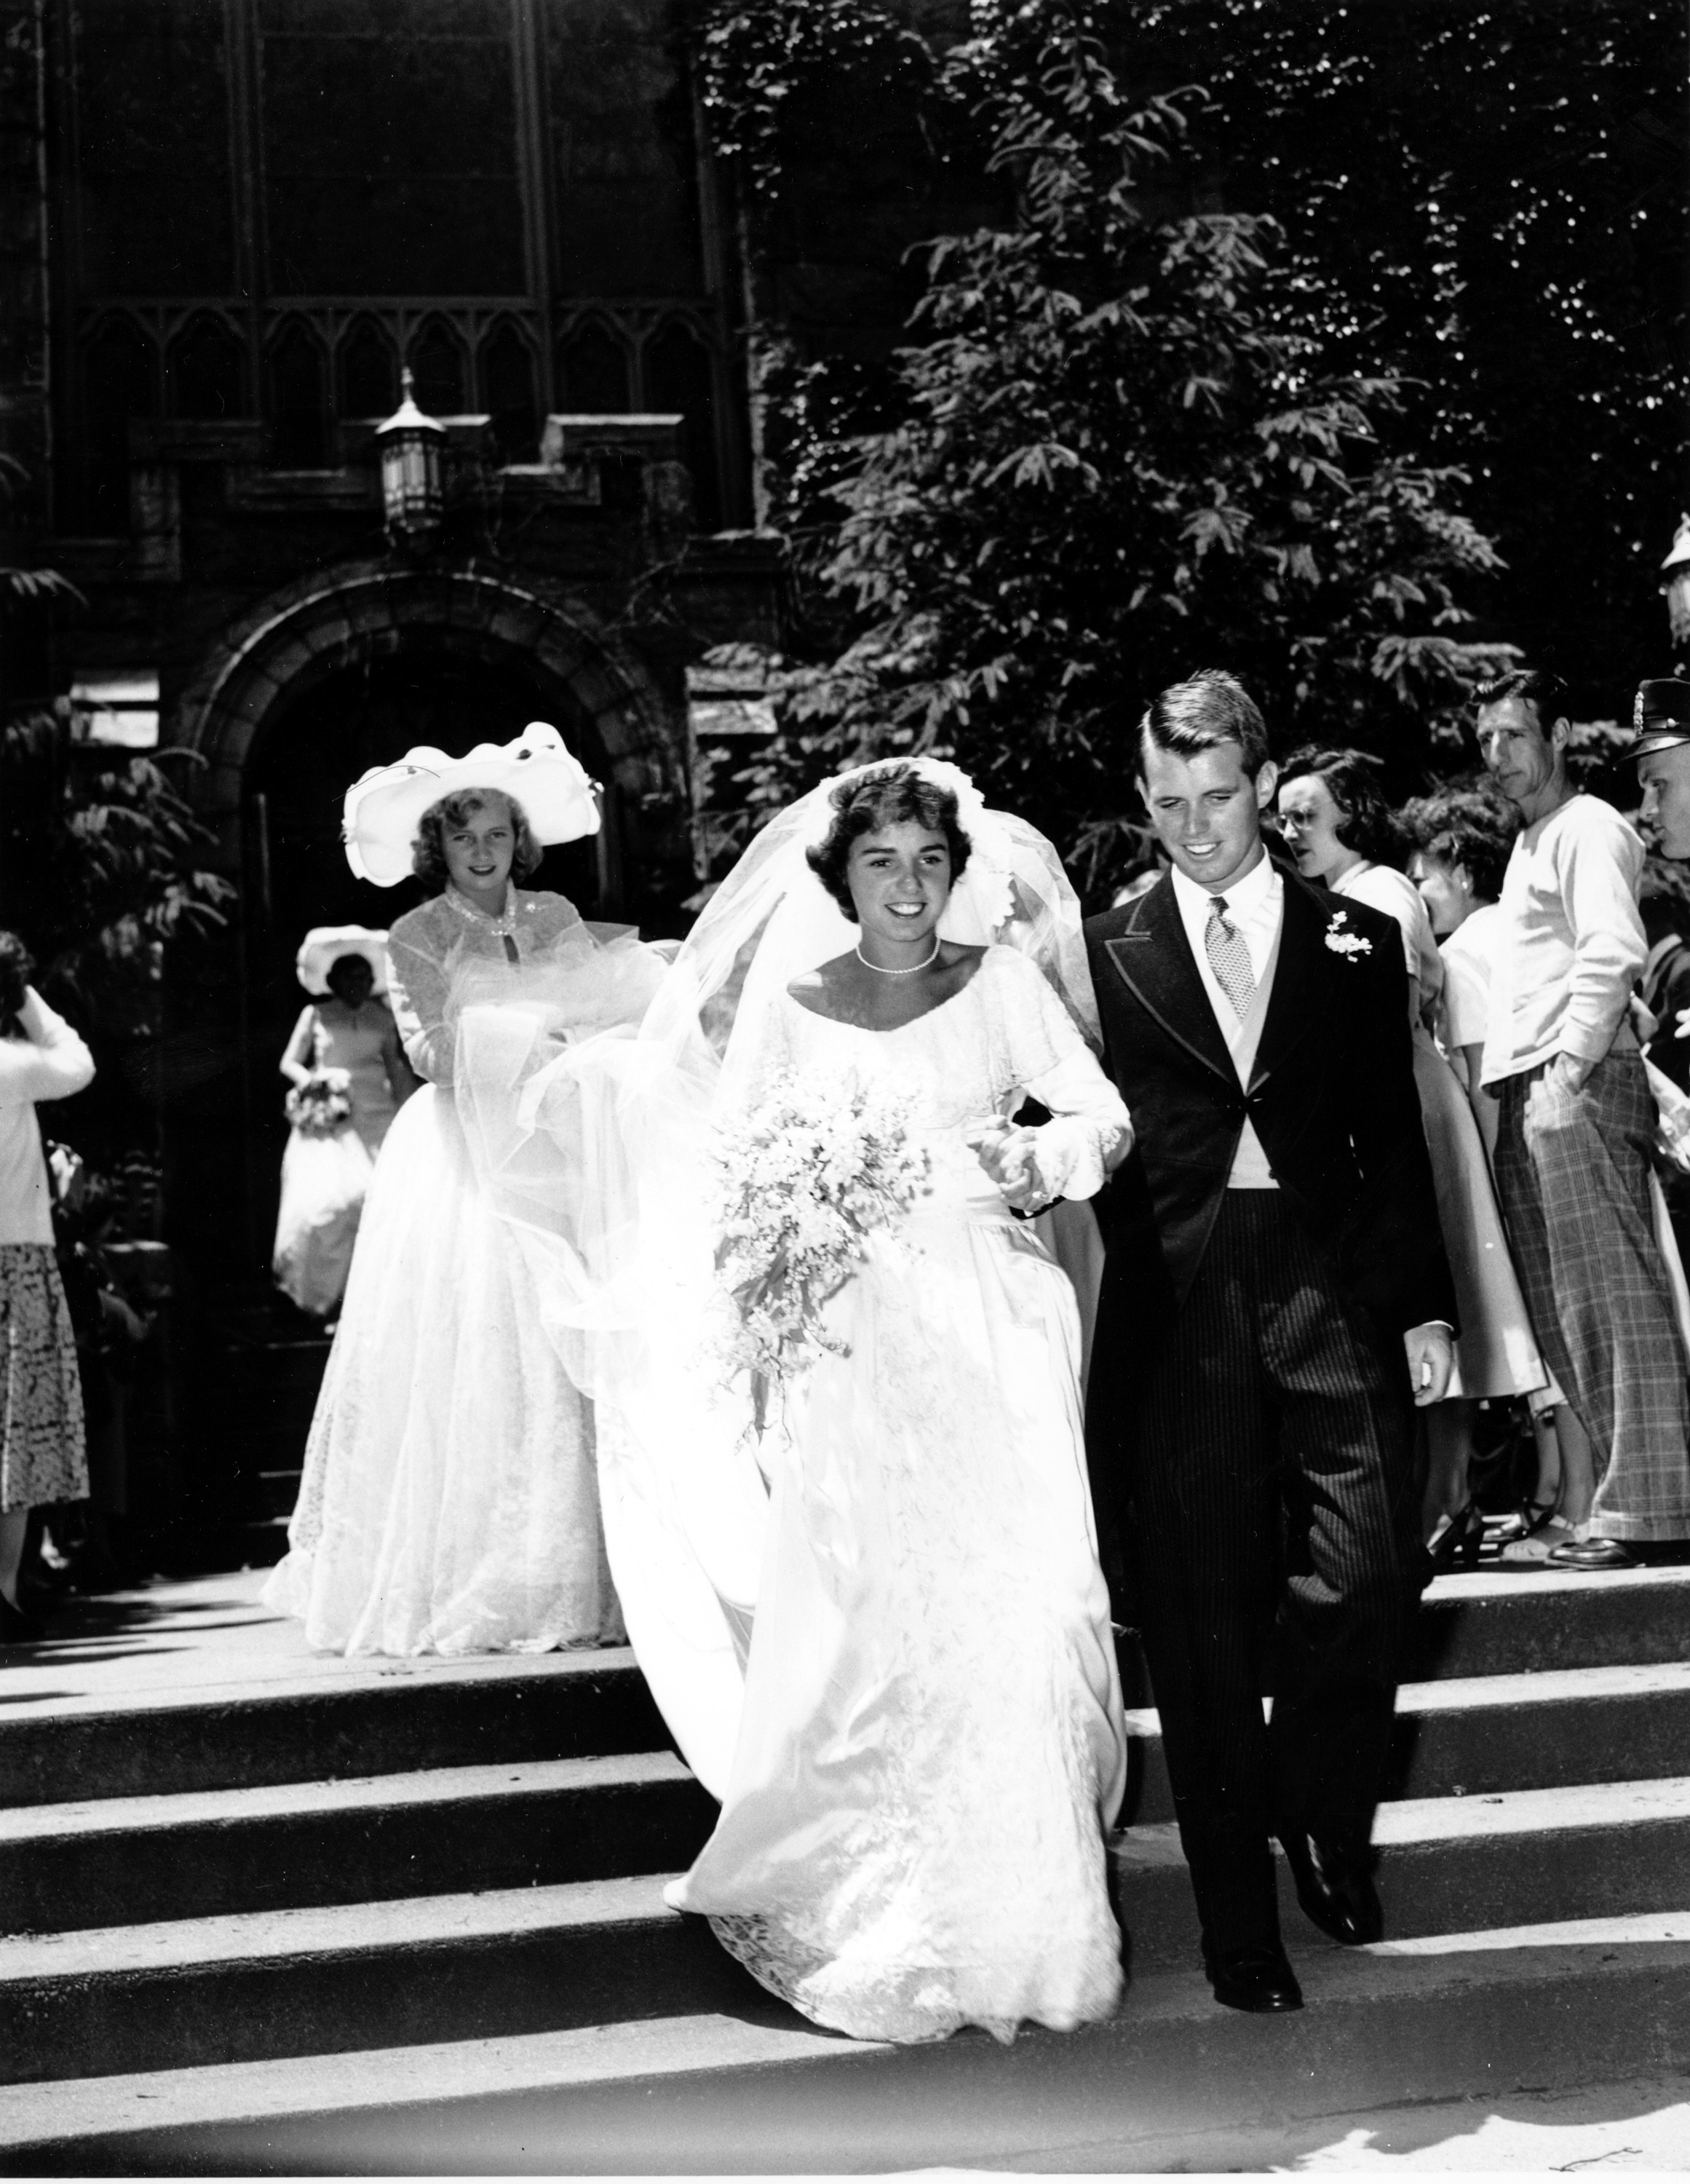 Ethel y Robert Kennedy, el día de su boda, en junio de 1970.